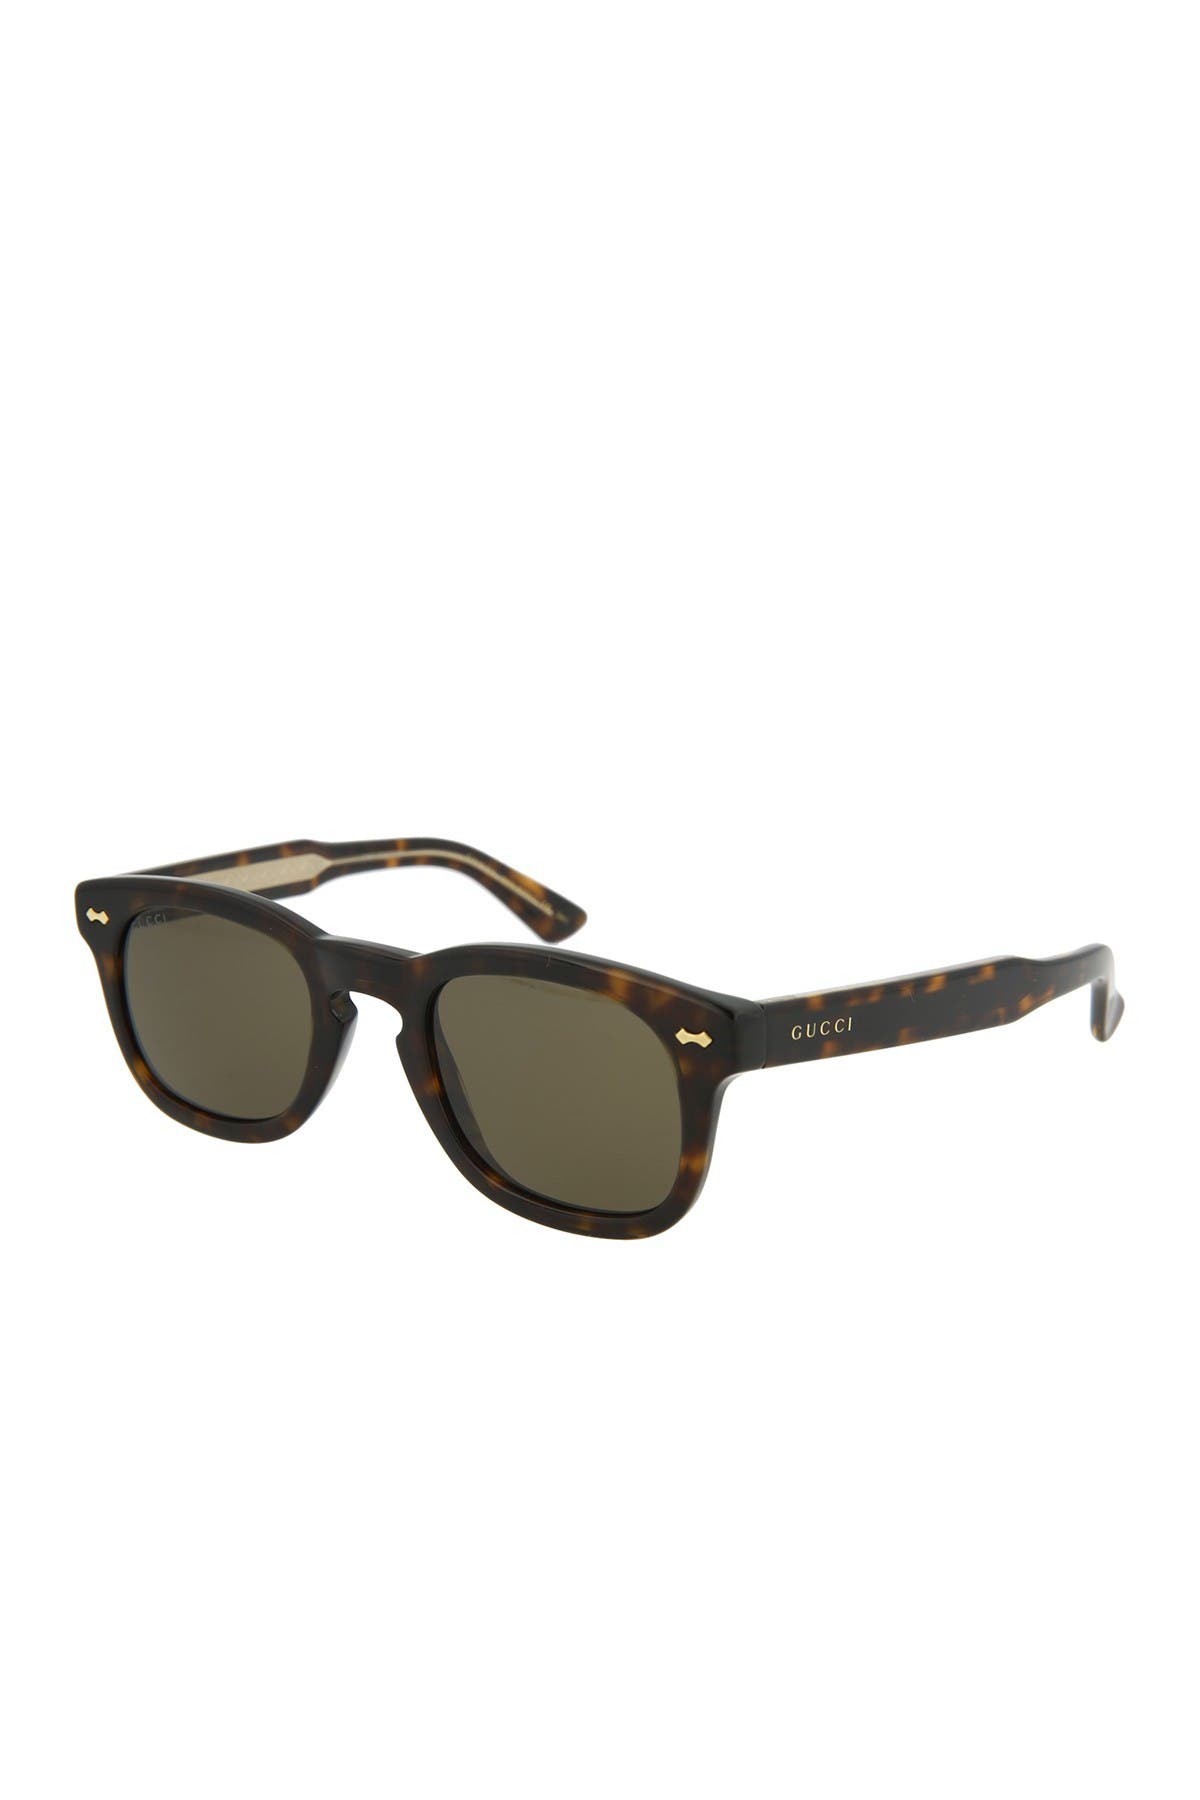 GUCCI | 49mm Square Core Sunglasses 